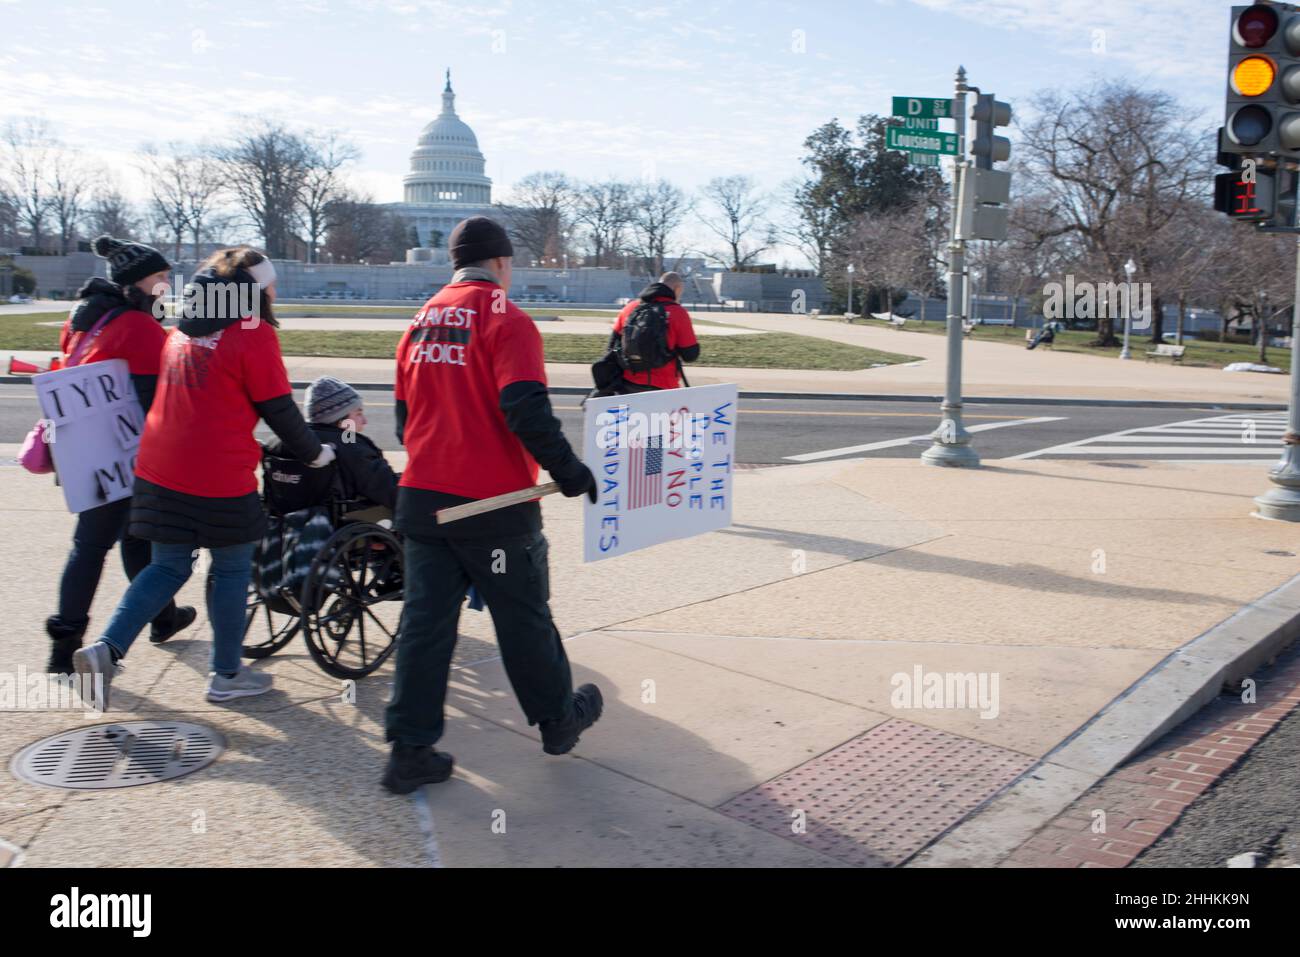 Les manifestants passent devant le capitole et marchent pour vaincre les mandats.Washington, DC, 23 janvier 2022. Banque D'Images